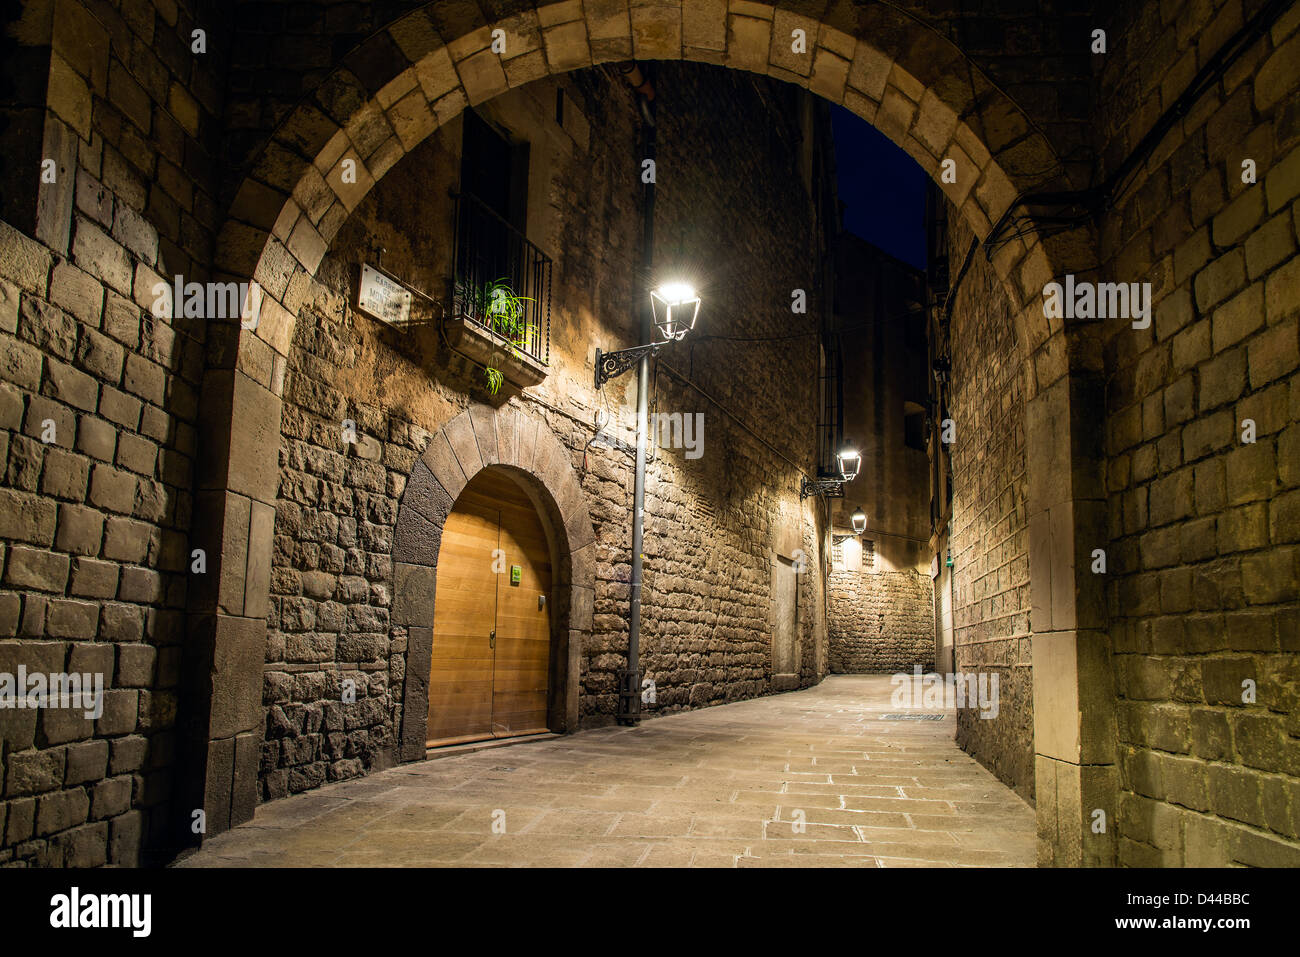 Vue de nuit sur un coin pittoresque dans le quartier Montjuic, Barcelone, Catalogne, Espagne Banque D'Images